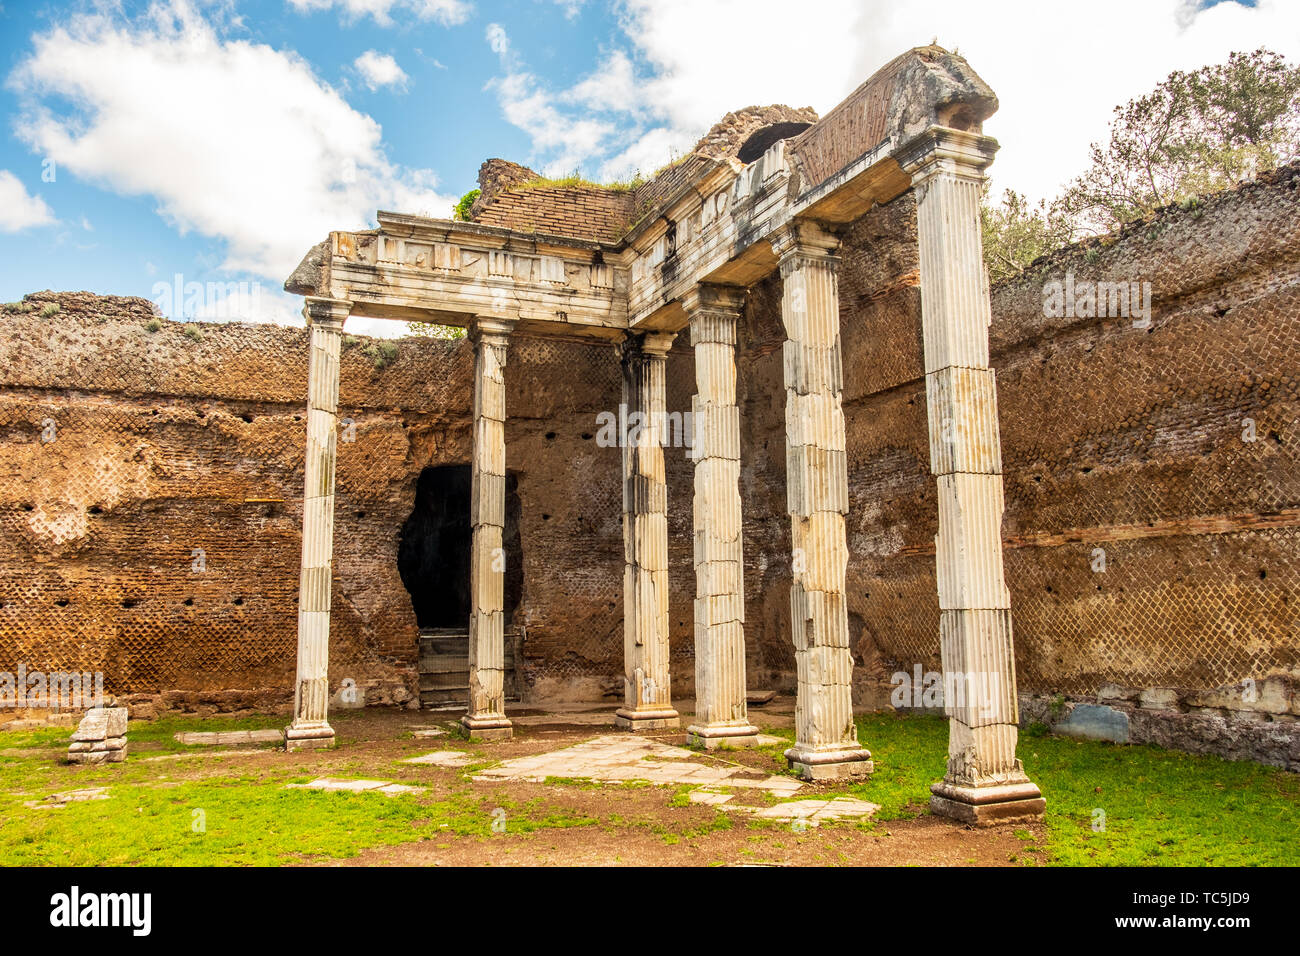 Villa Adriana ruinas romanas columnas - Tivoli Roma - Italia Foto de stock